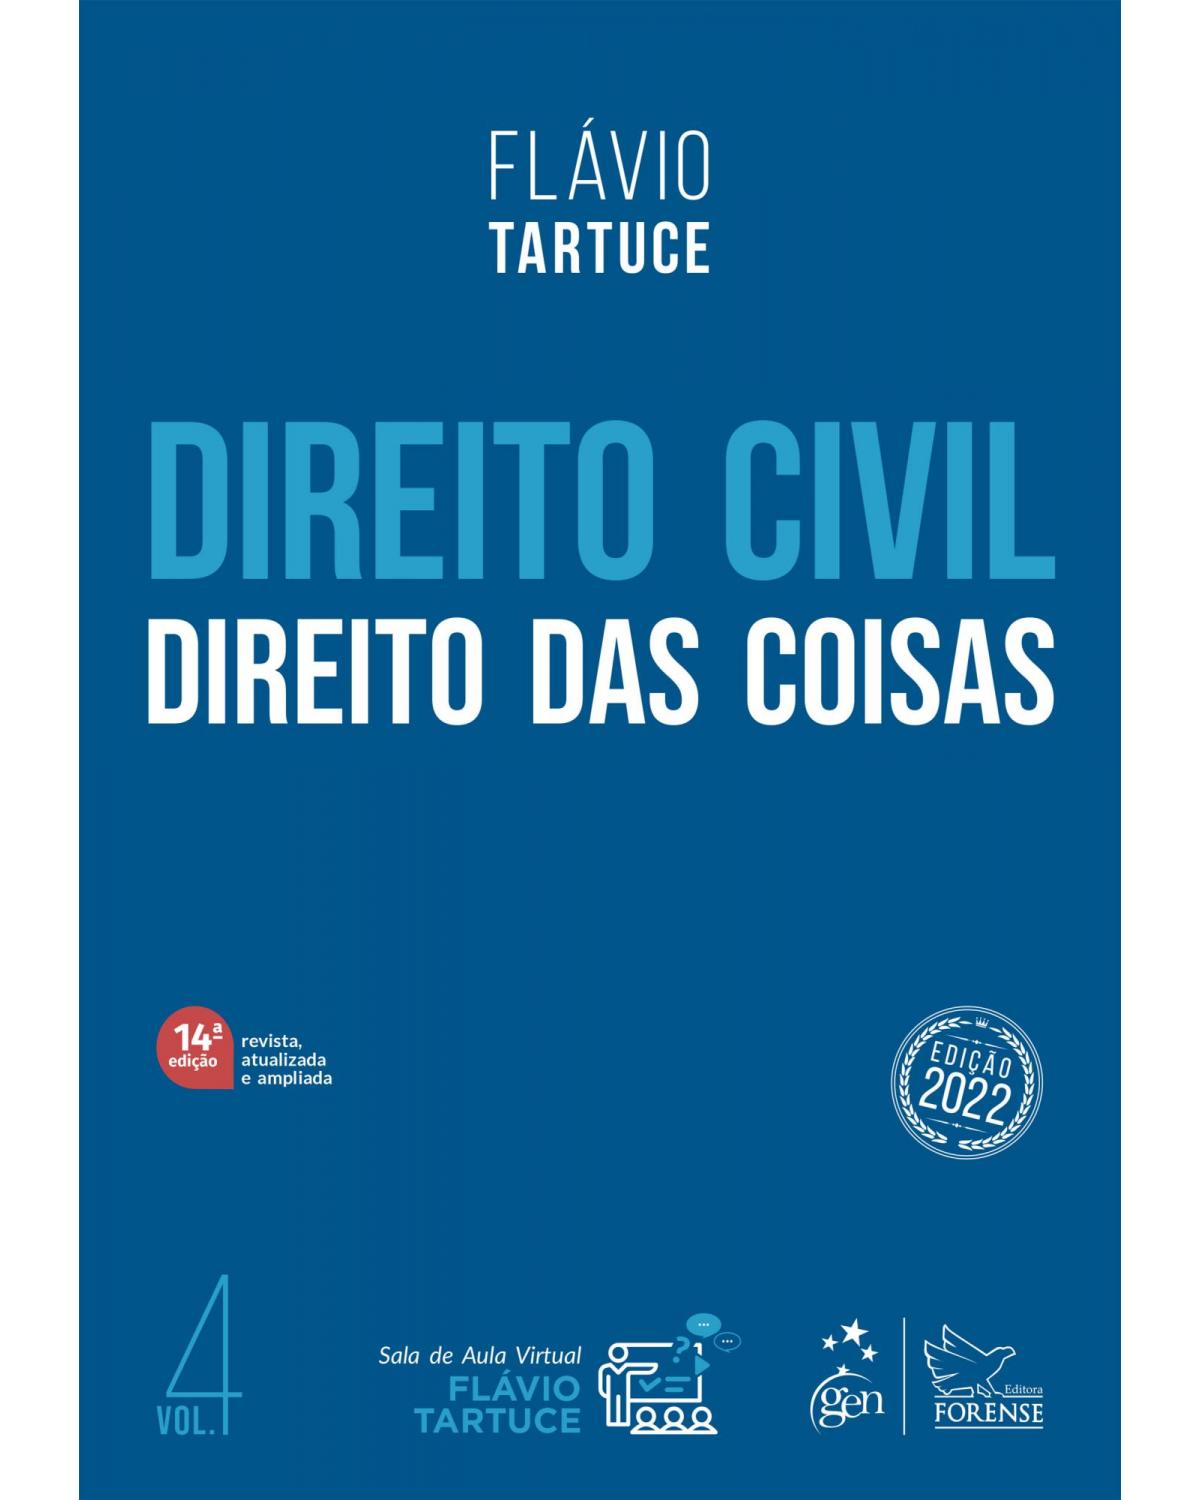 Direito civil - Direito das coisas - Volume 4:  - 14ª Edição | 2022